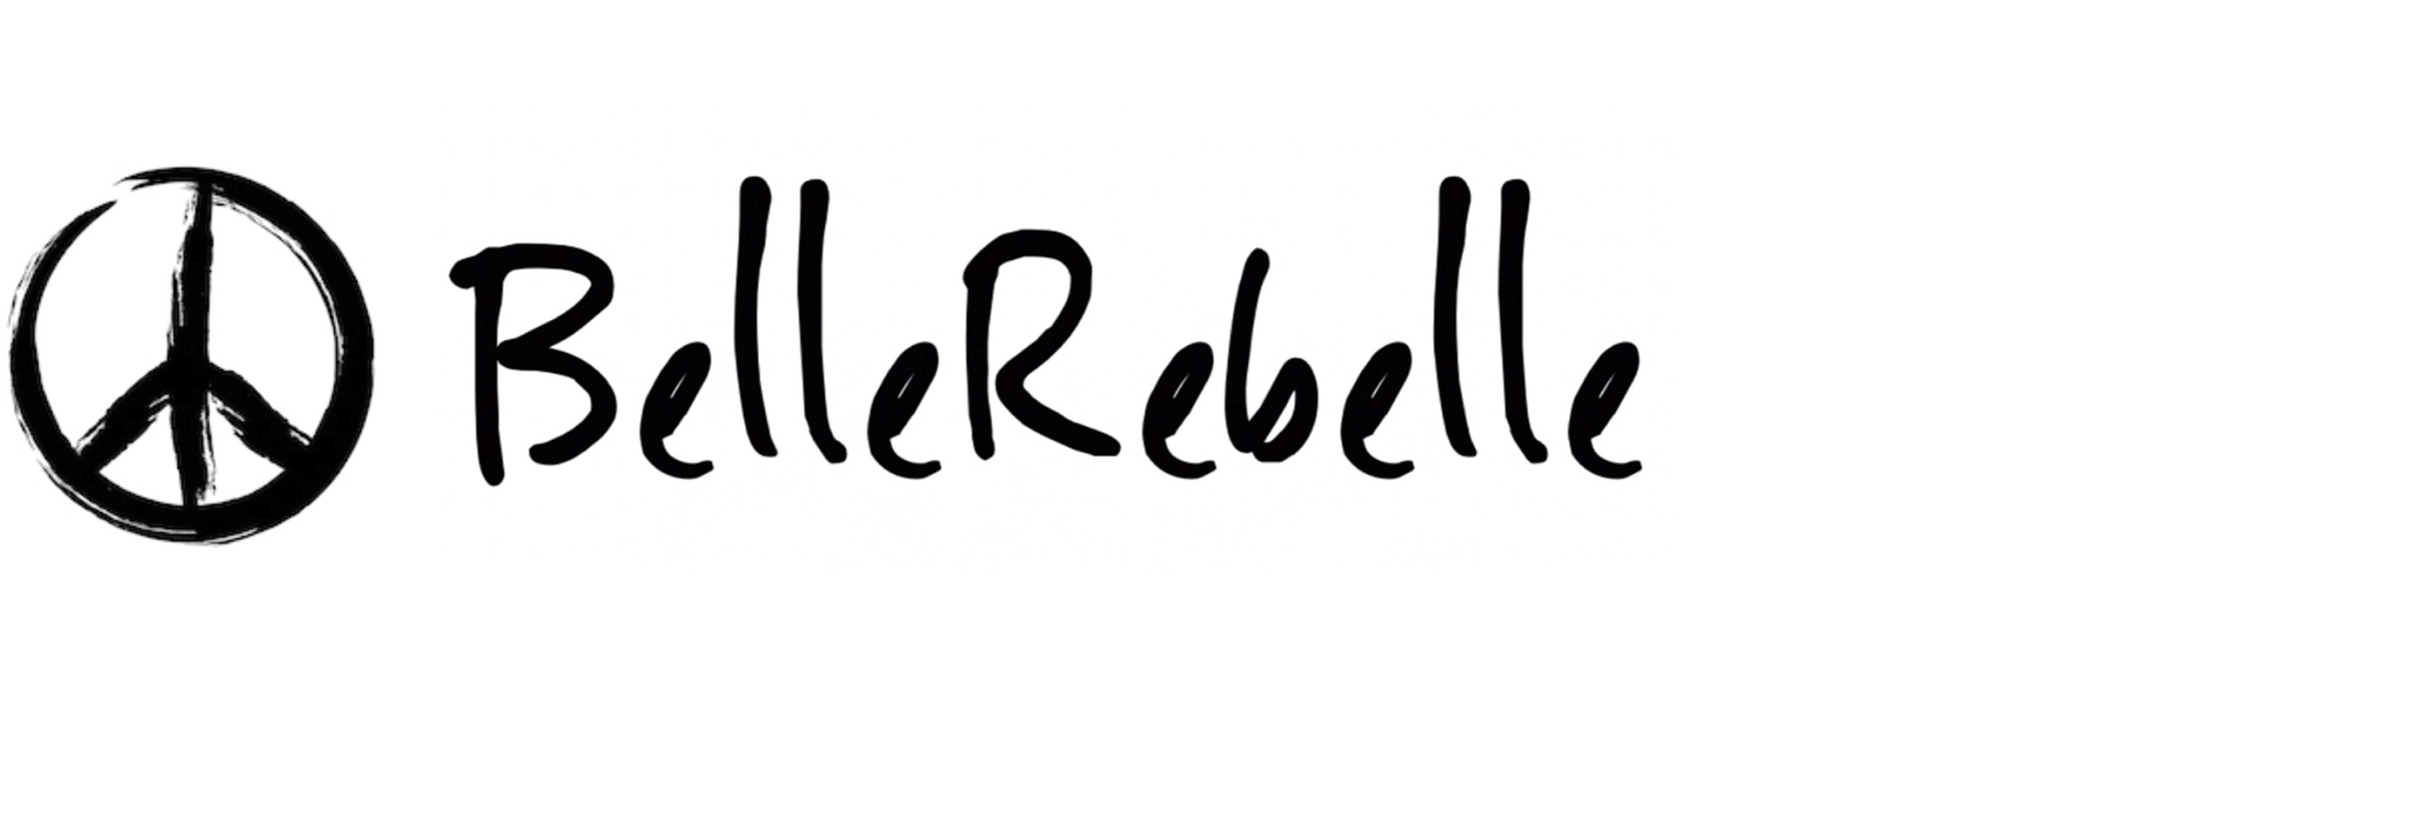 BelleRebelle